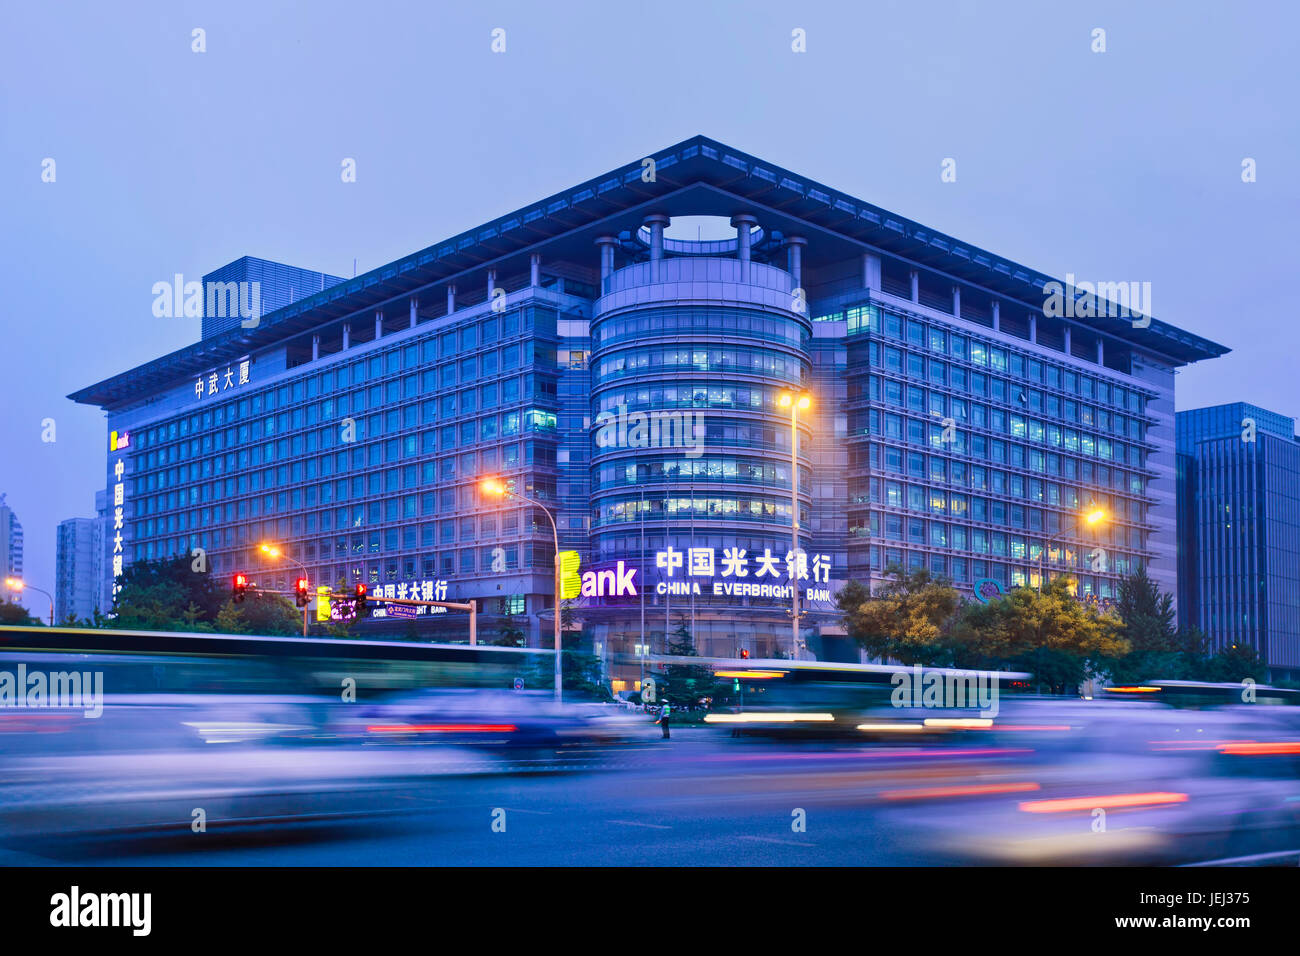 PECHINO-MAGGIO 21. China Everbright Bank al crepuscolo. Società statale in gestione patrimoniale, brokeraggio e investment banking in Cina. Foto Stock